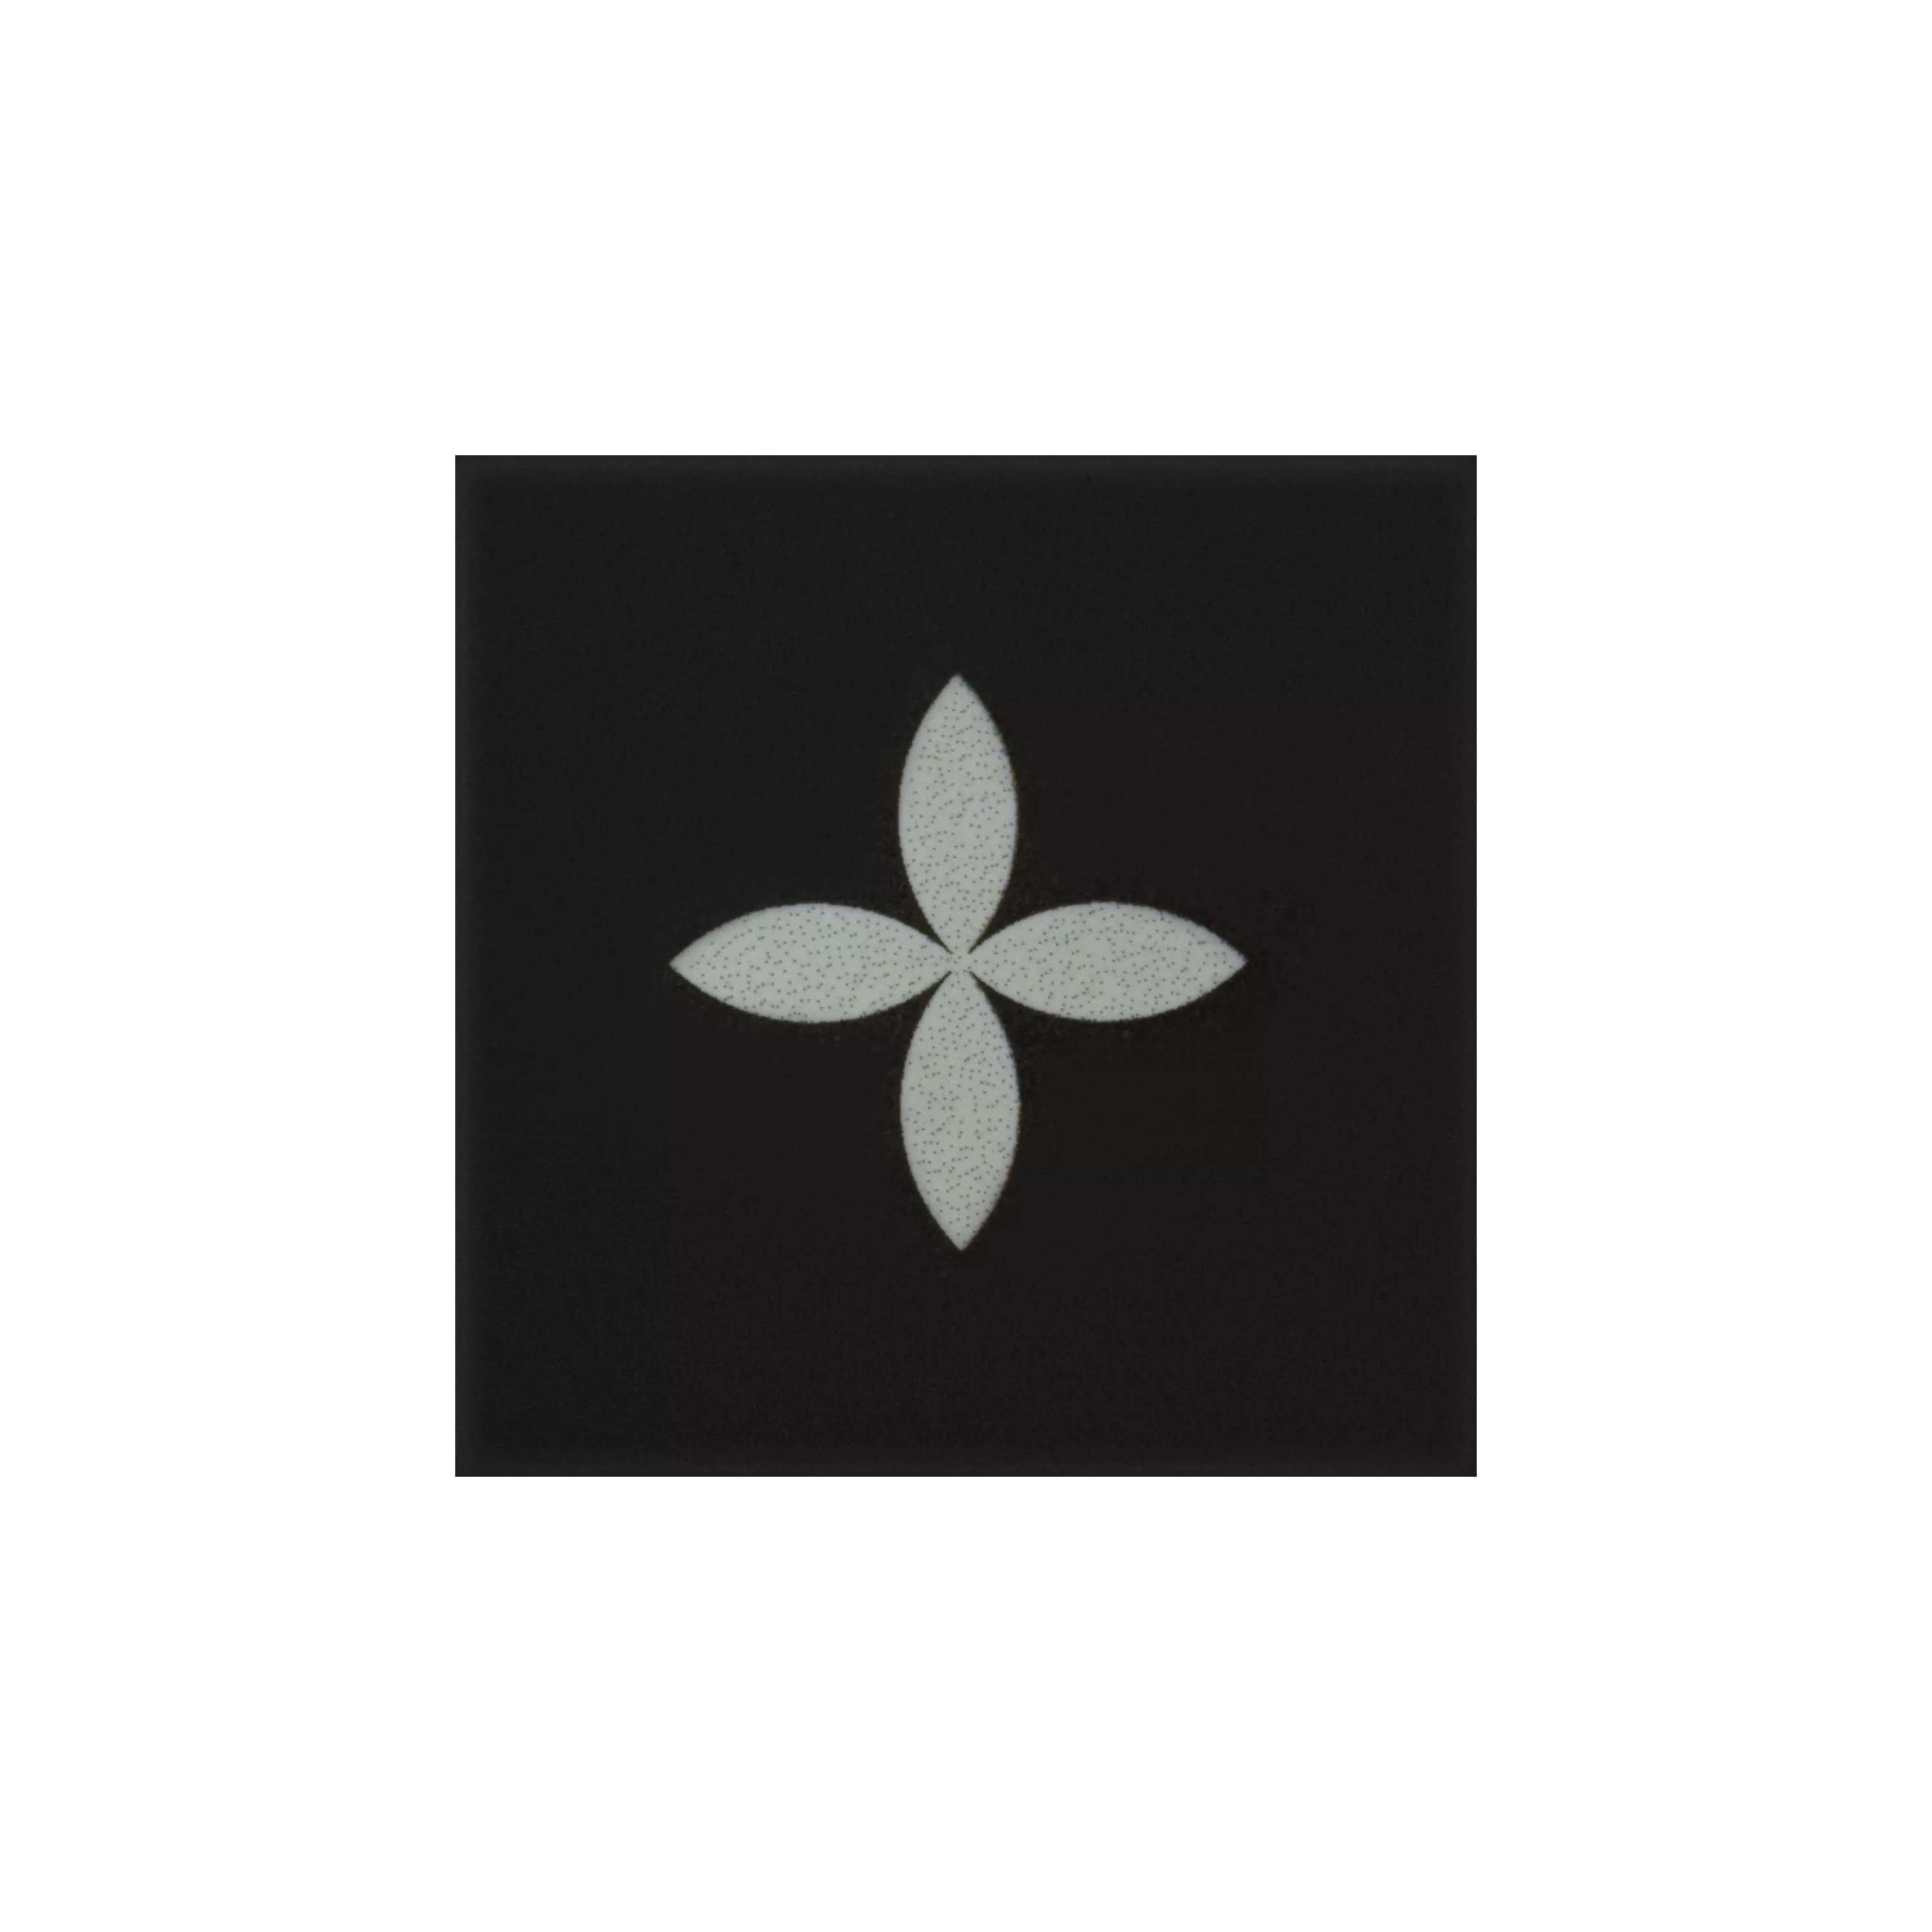 Порцеланови Kаменинови Изделия Плочки Genexia Черно Бяло Decor 2 Розоне 4,6x4,6cm